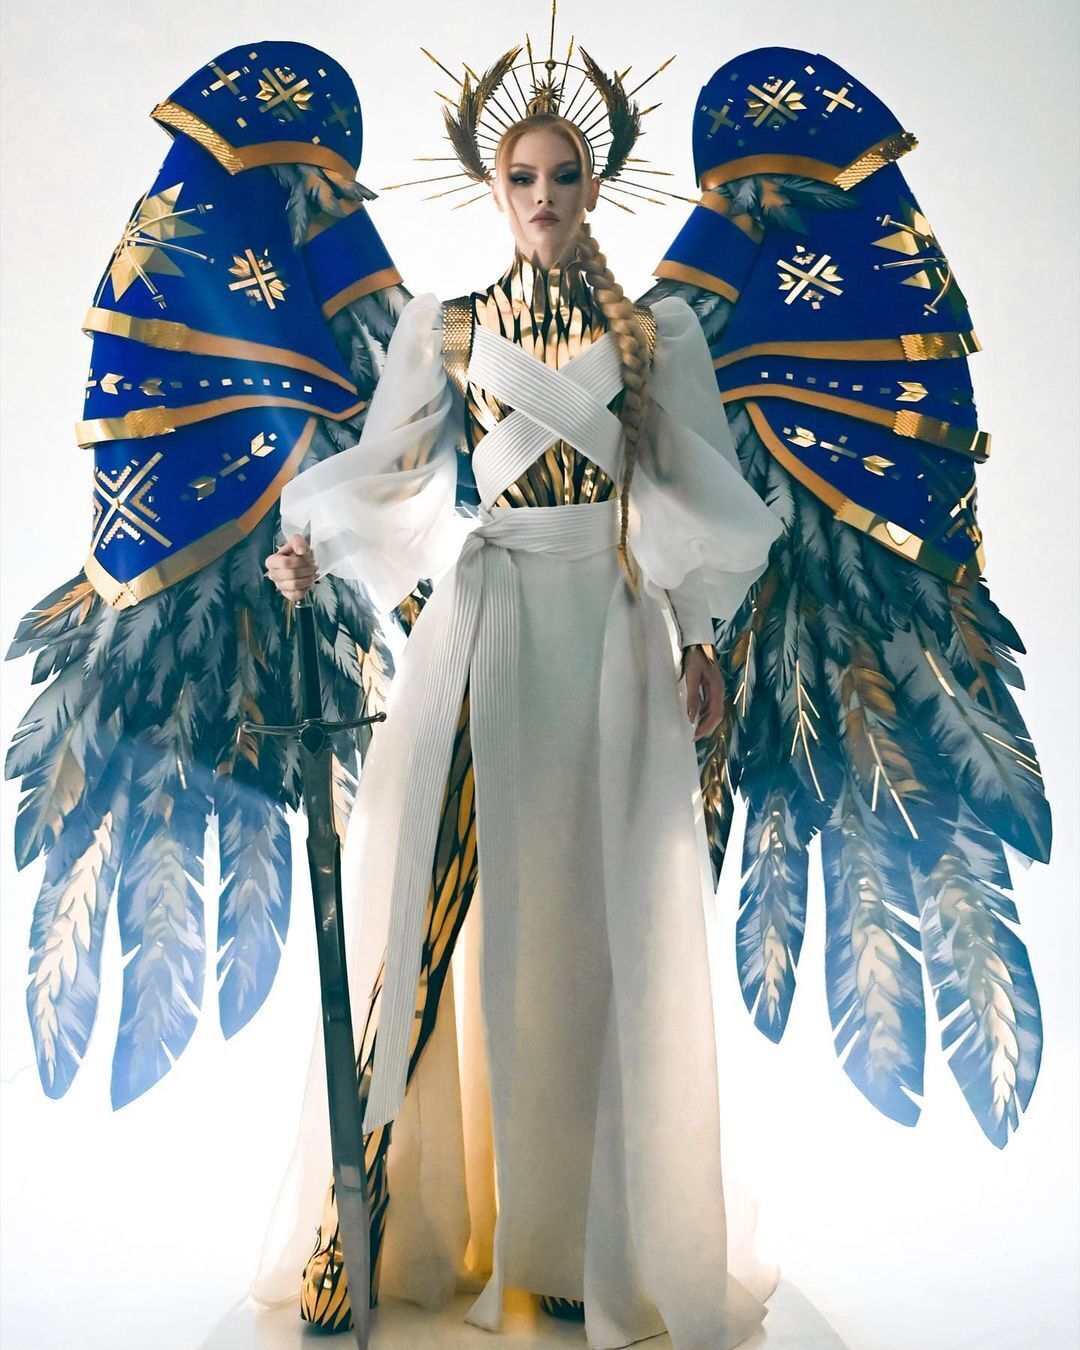 Україна перемогла у конкурсі національних костюмів на "Міс Всесвіт": голосували глядачі